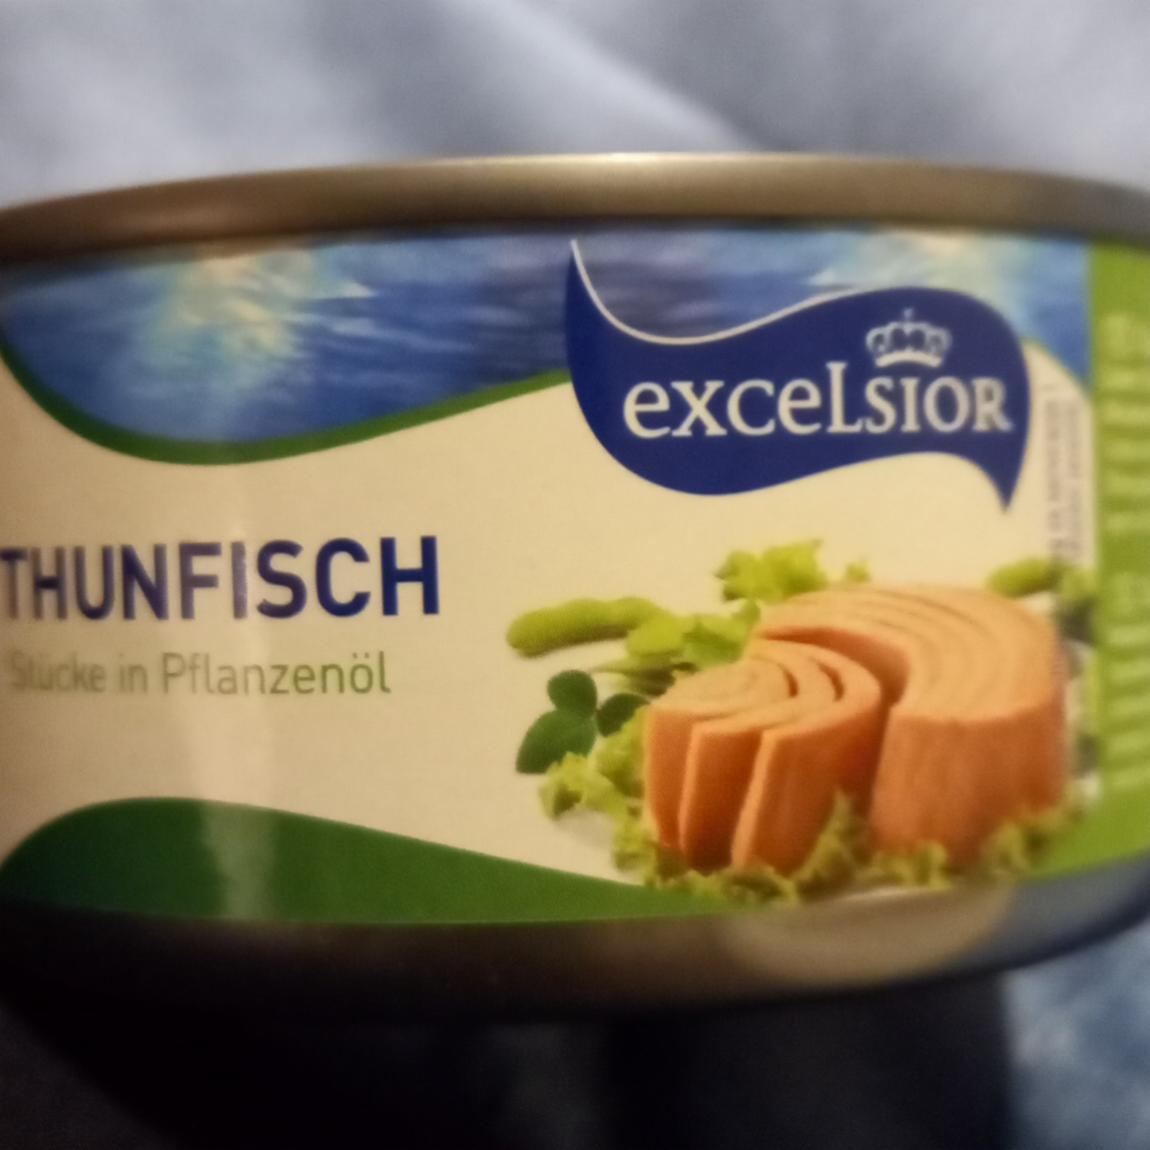 Fotografie - Thunfisch Stücke in Pflanzenöl Excelsior